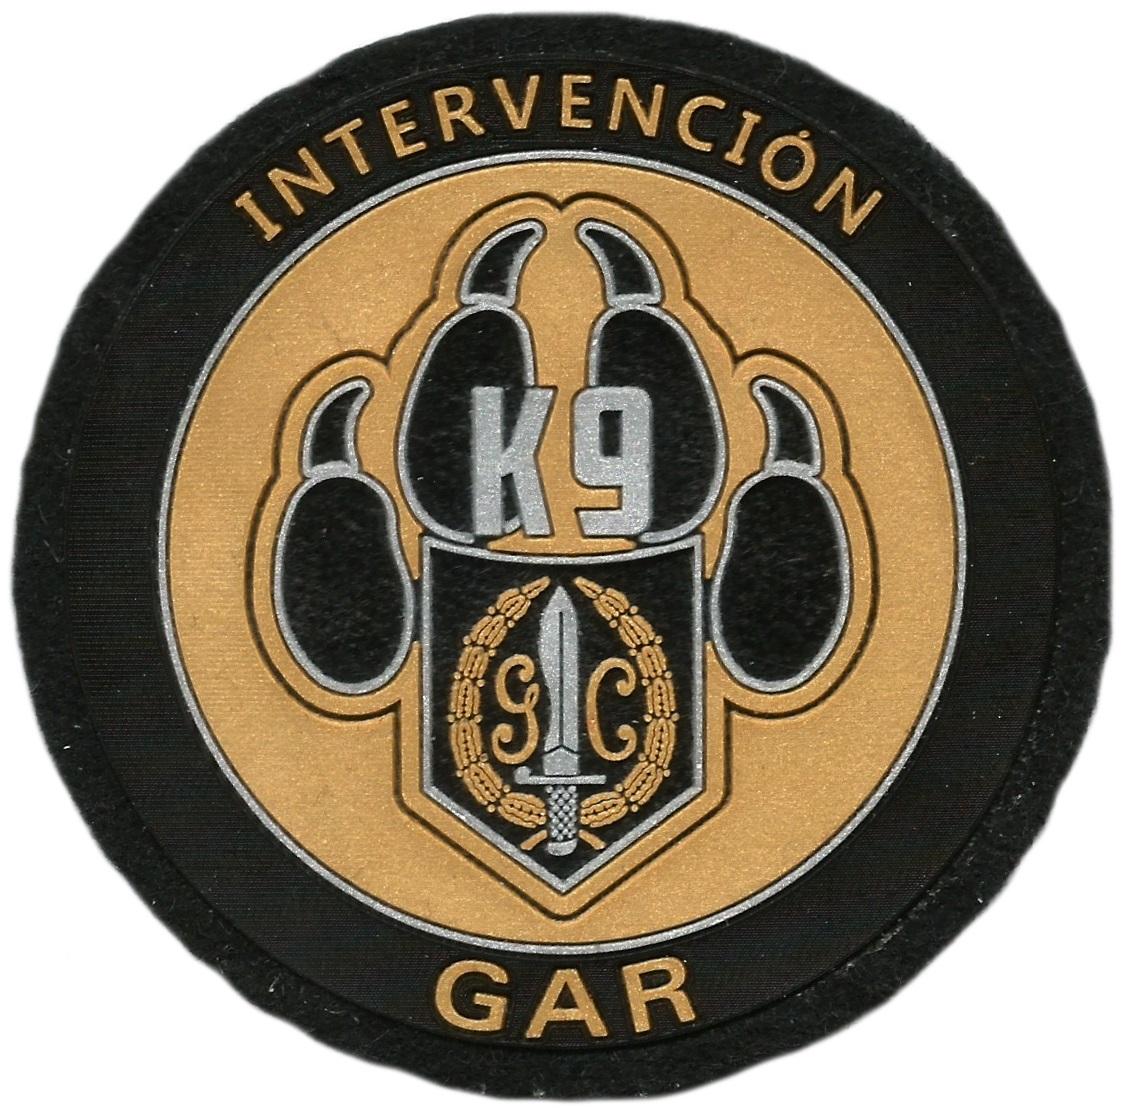 Guardia civil gar intervención con perros k-9 parche insignia emblema distintivo 